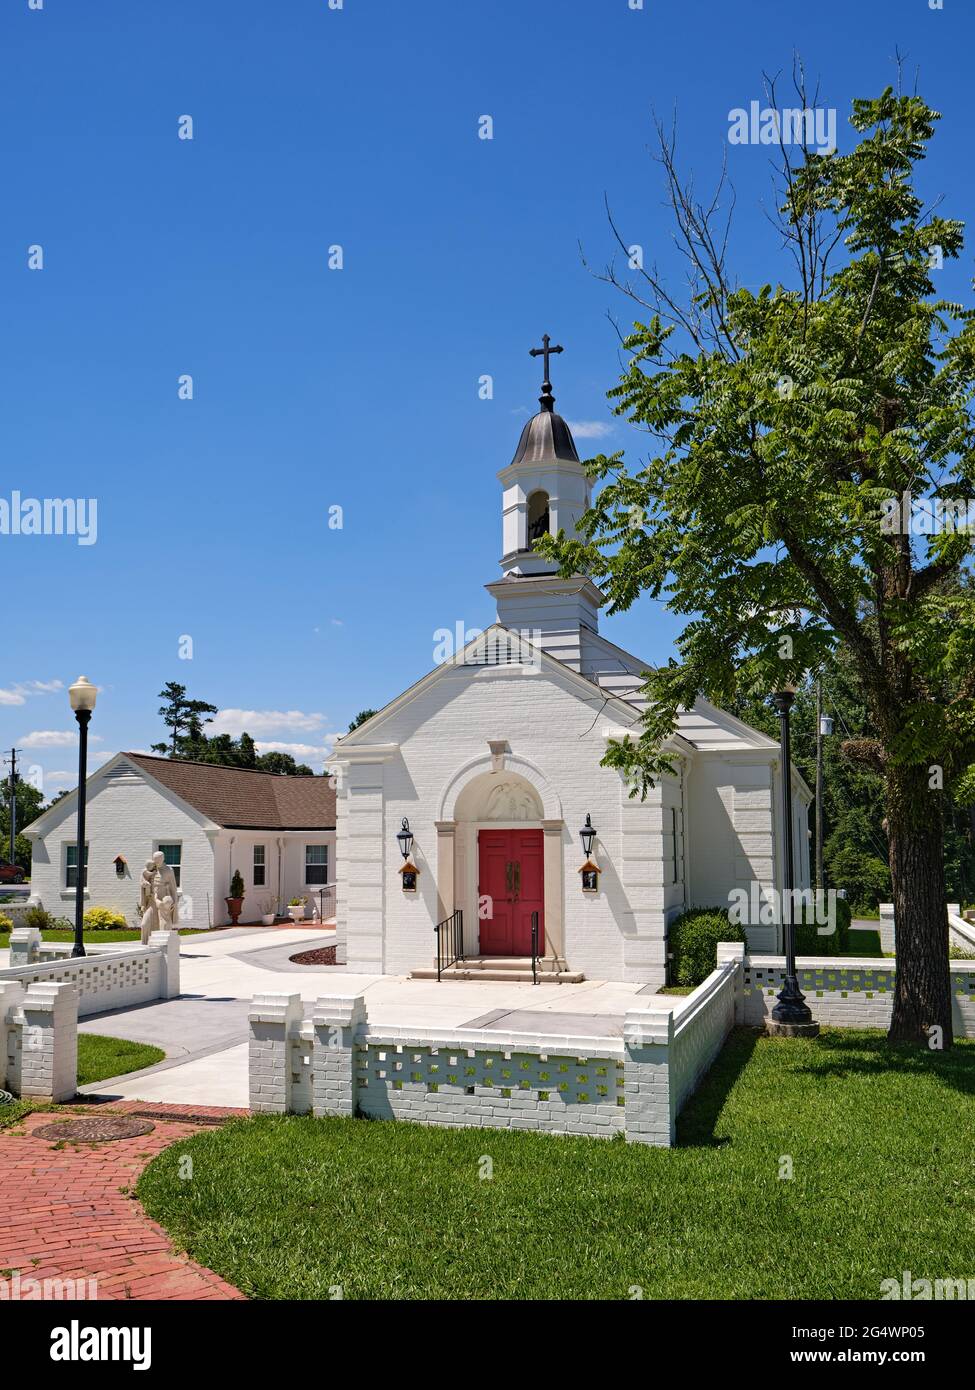 L'église catholique St Vincent de Paul à Tallassee, Alabama, États-Unis, ressemble à une petite ou petite église blanche typique souvent trouvée dans le sud. Banque D'Images